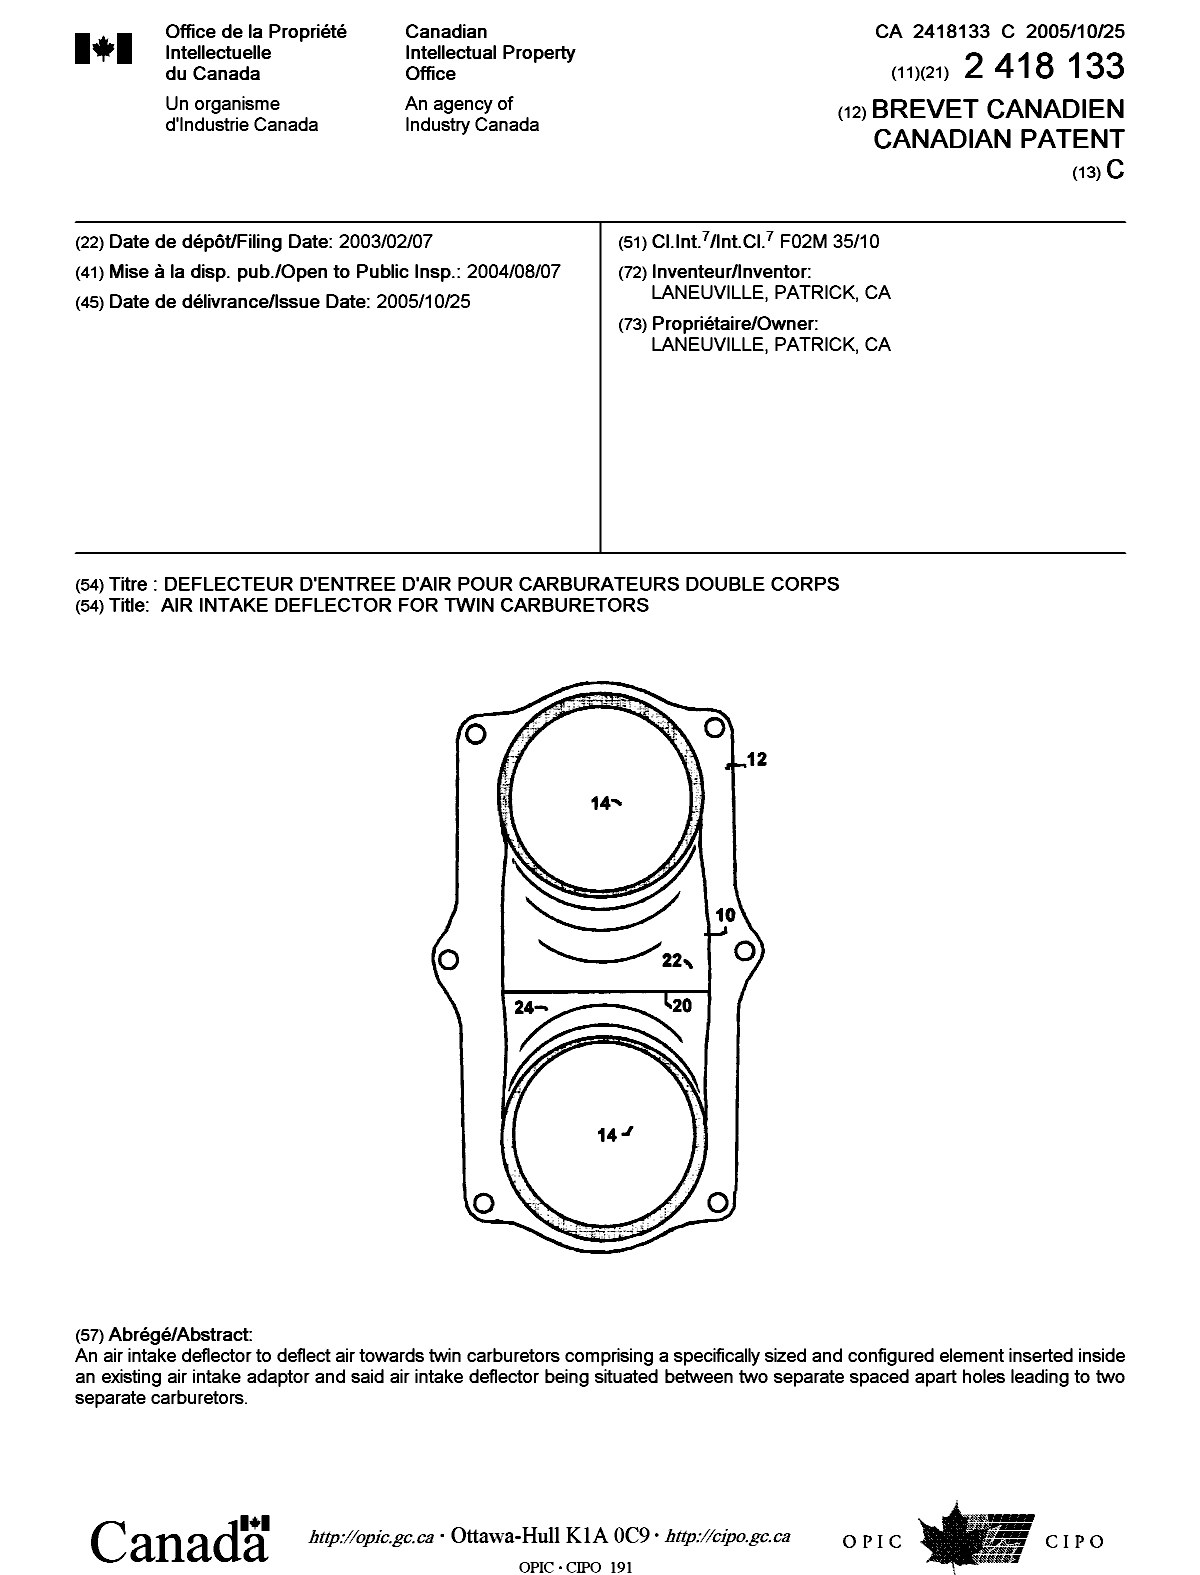 Document de brevet canadien 2418133. Page couverture 20051006. Image 1 de 1